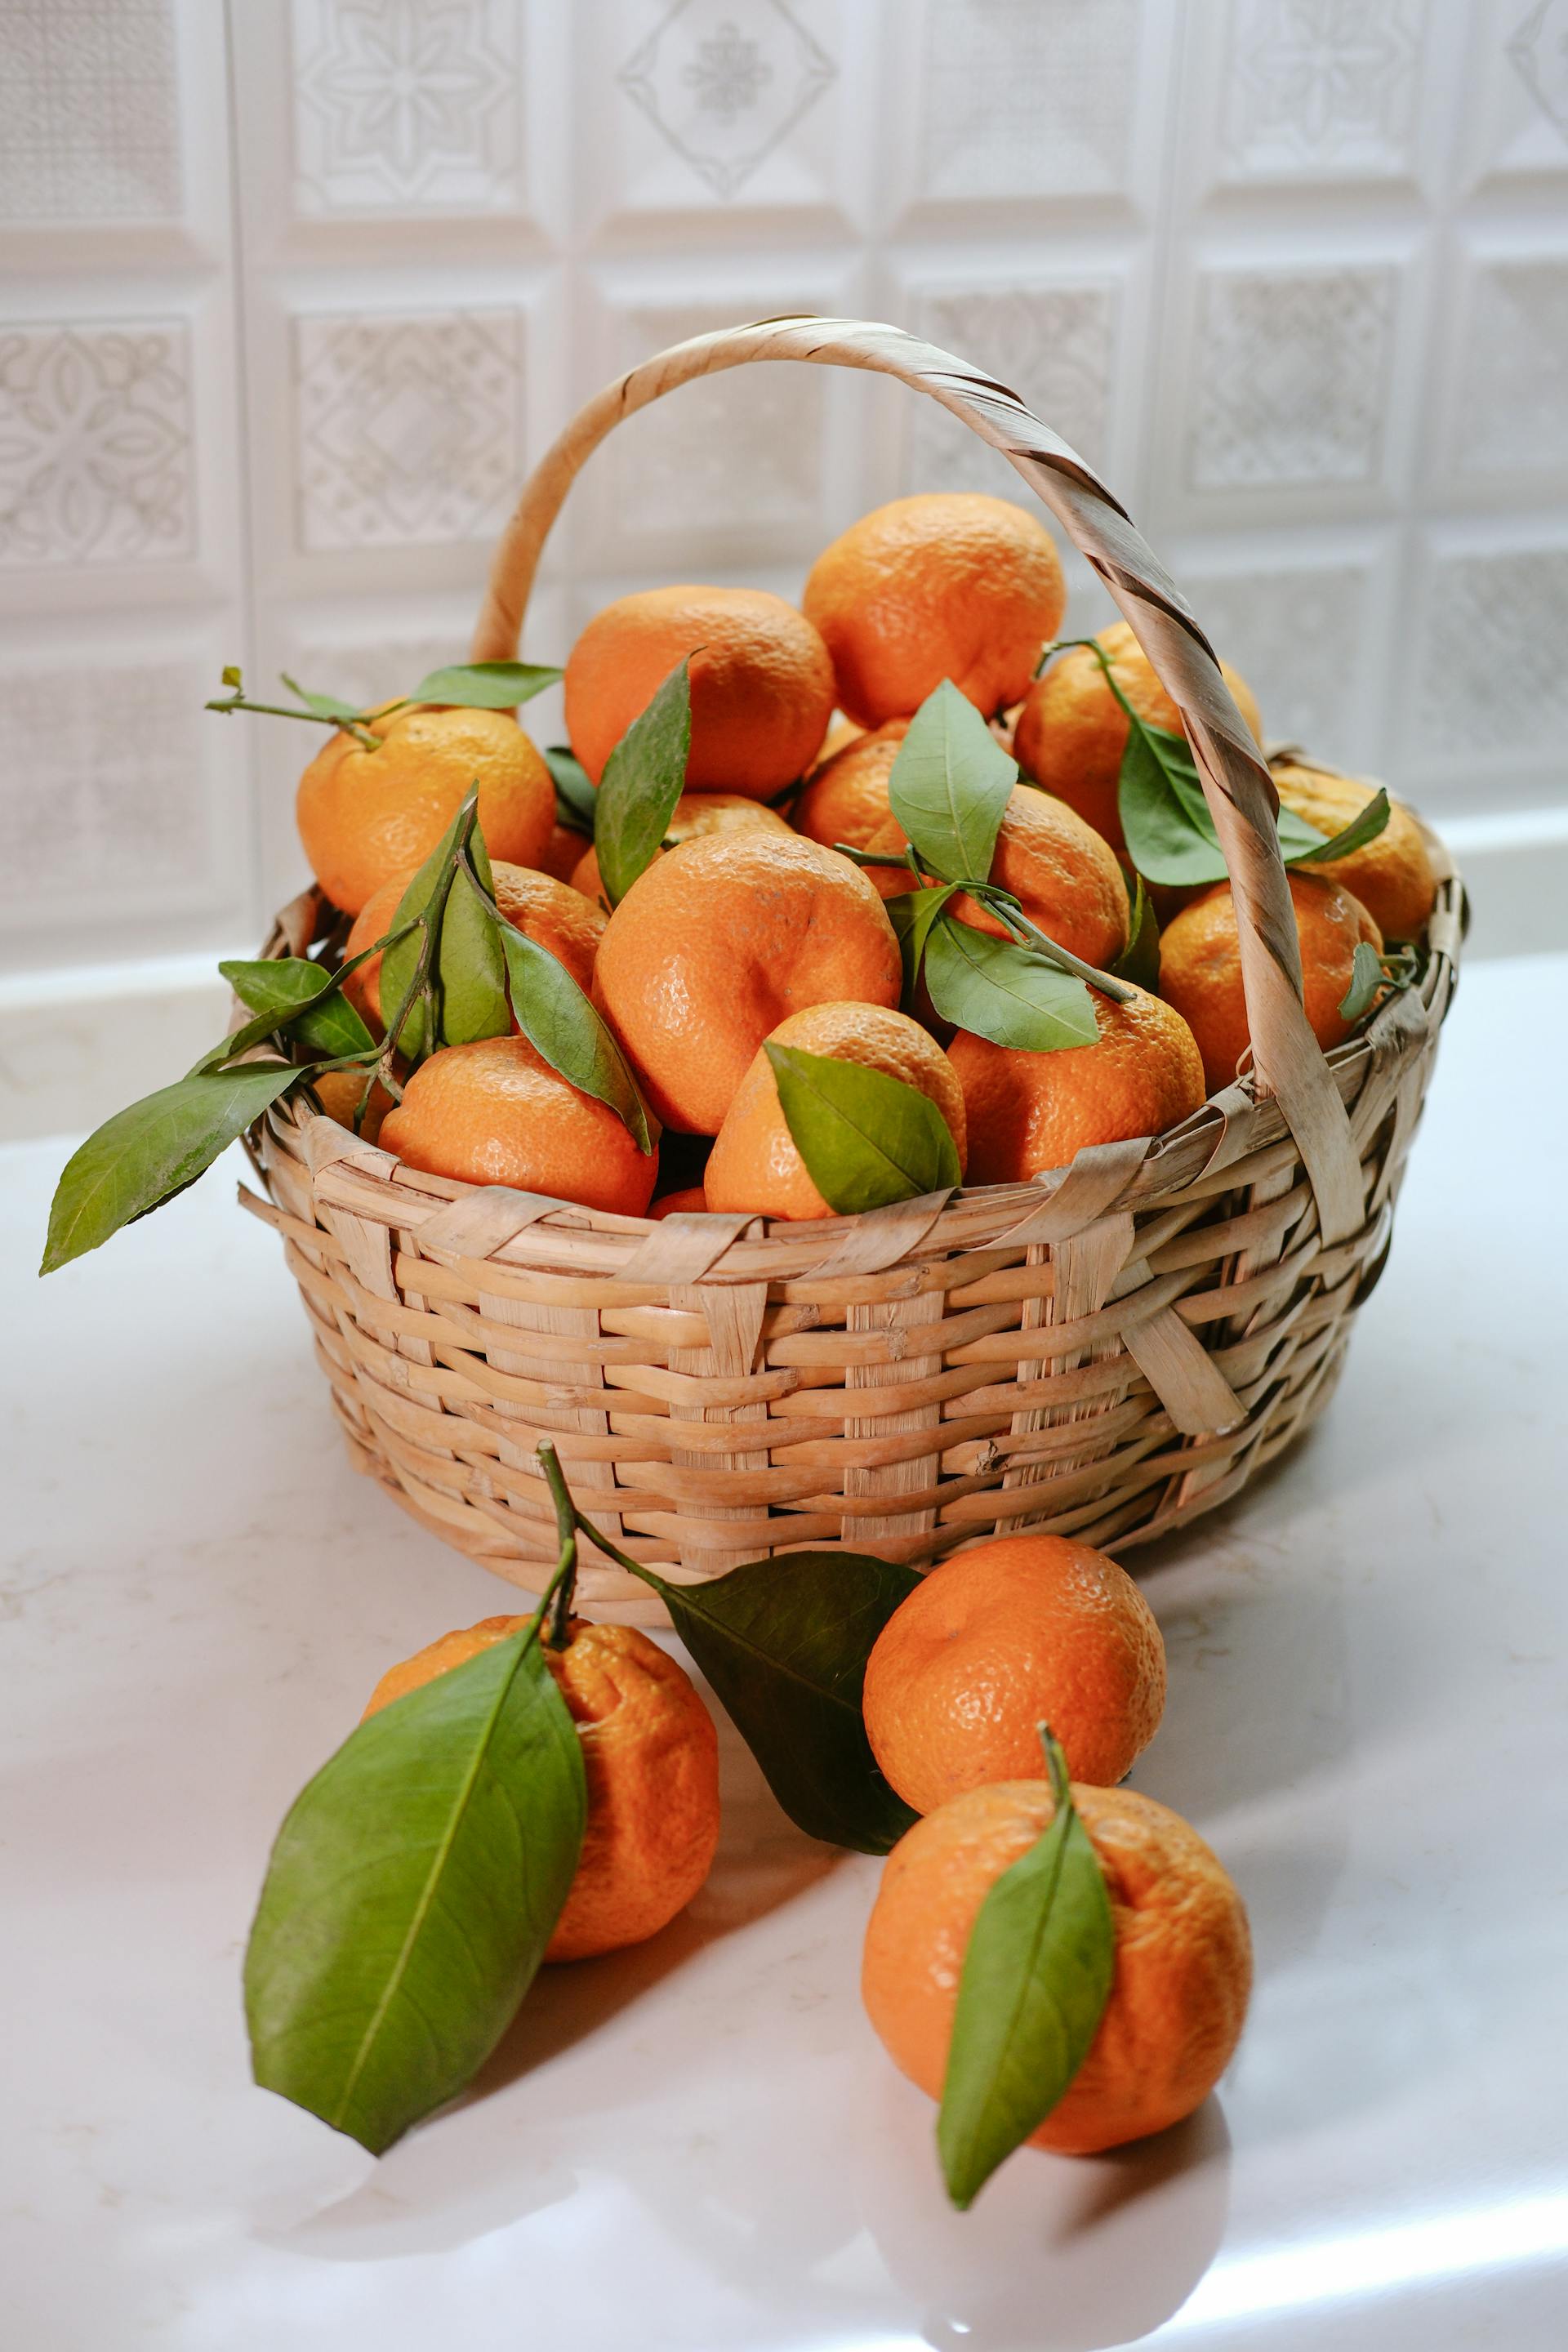 How Long Do Tangerines Last In The Fridge? | Fridge.com